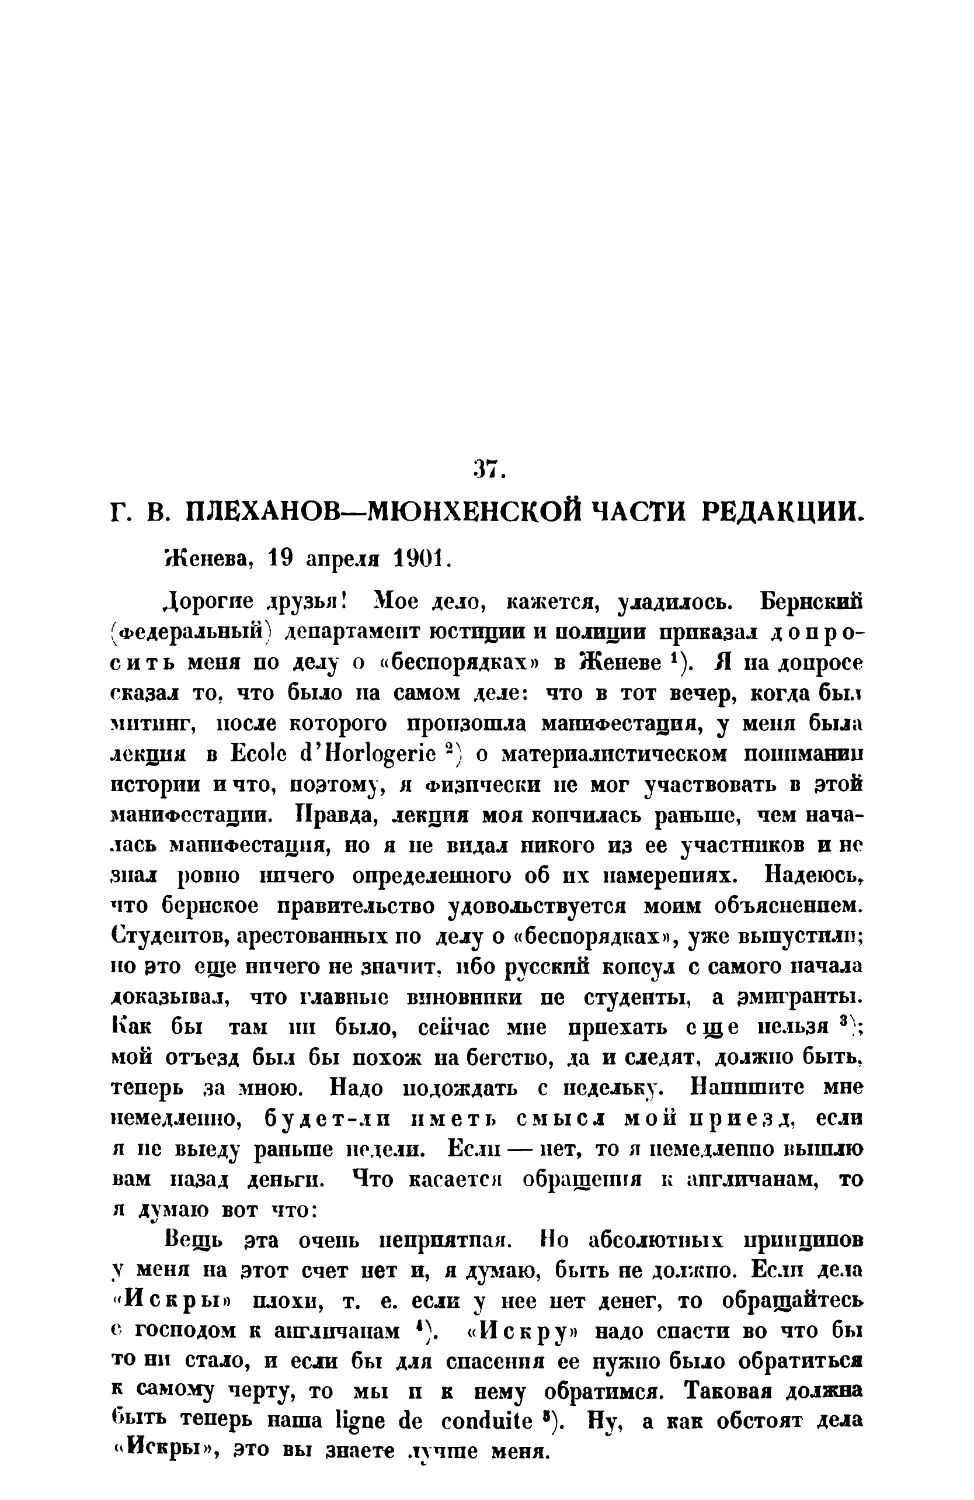 37. Г. В. Плеханов. — Письмо Мюнхенской части редакции от 19 IV 1901 г.